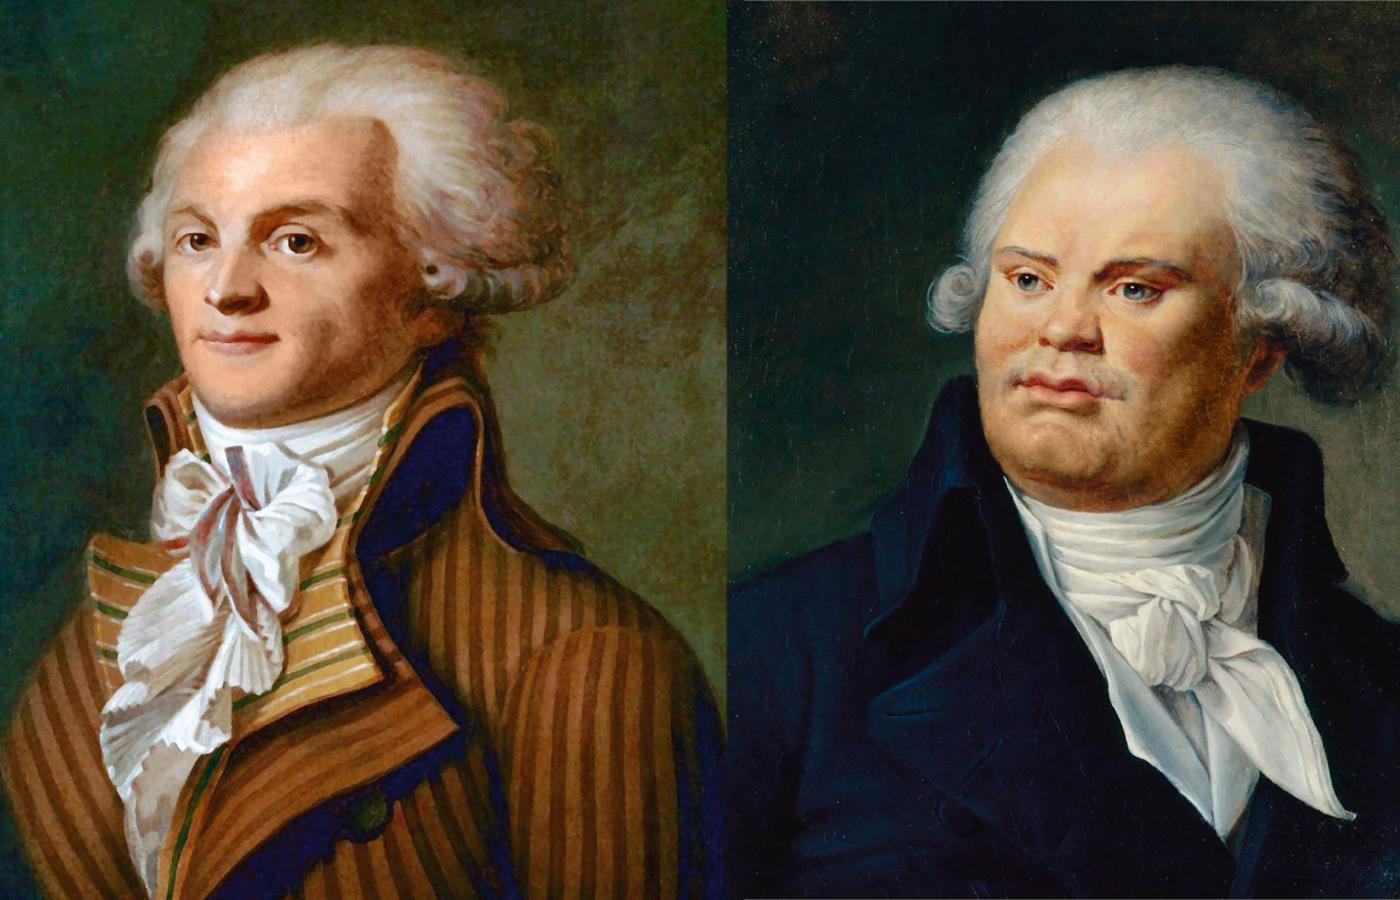 Georges Jacques Danton i Maximilien de Robespierre, dwaj zgilotynowani przywódcy rewolucji, na obrazach z epoki.